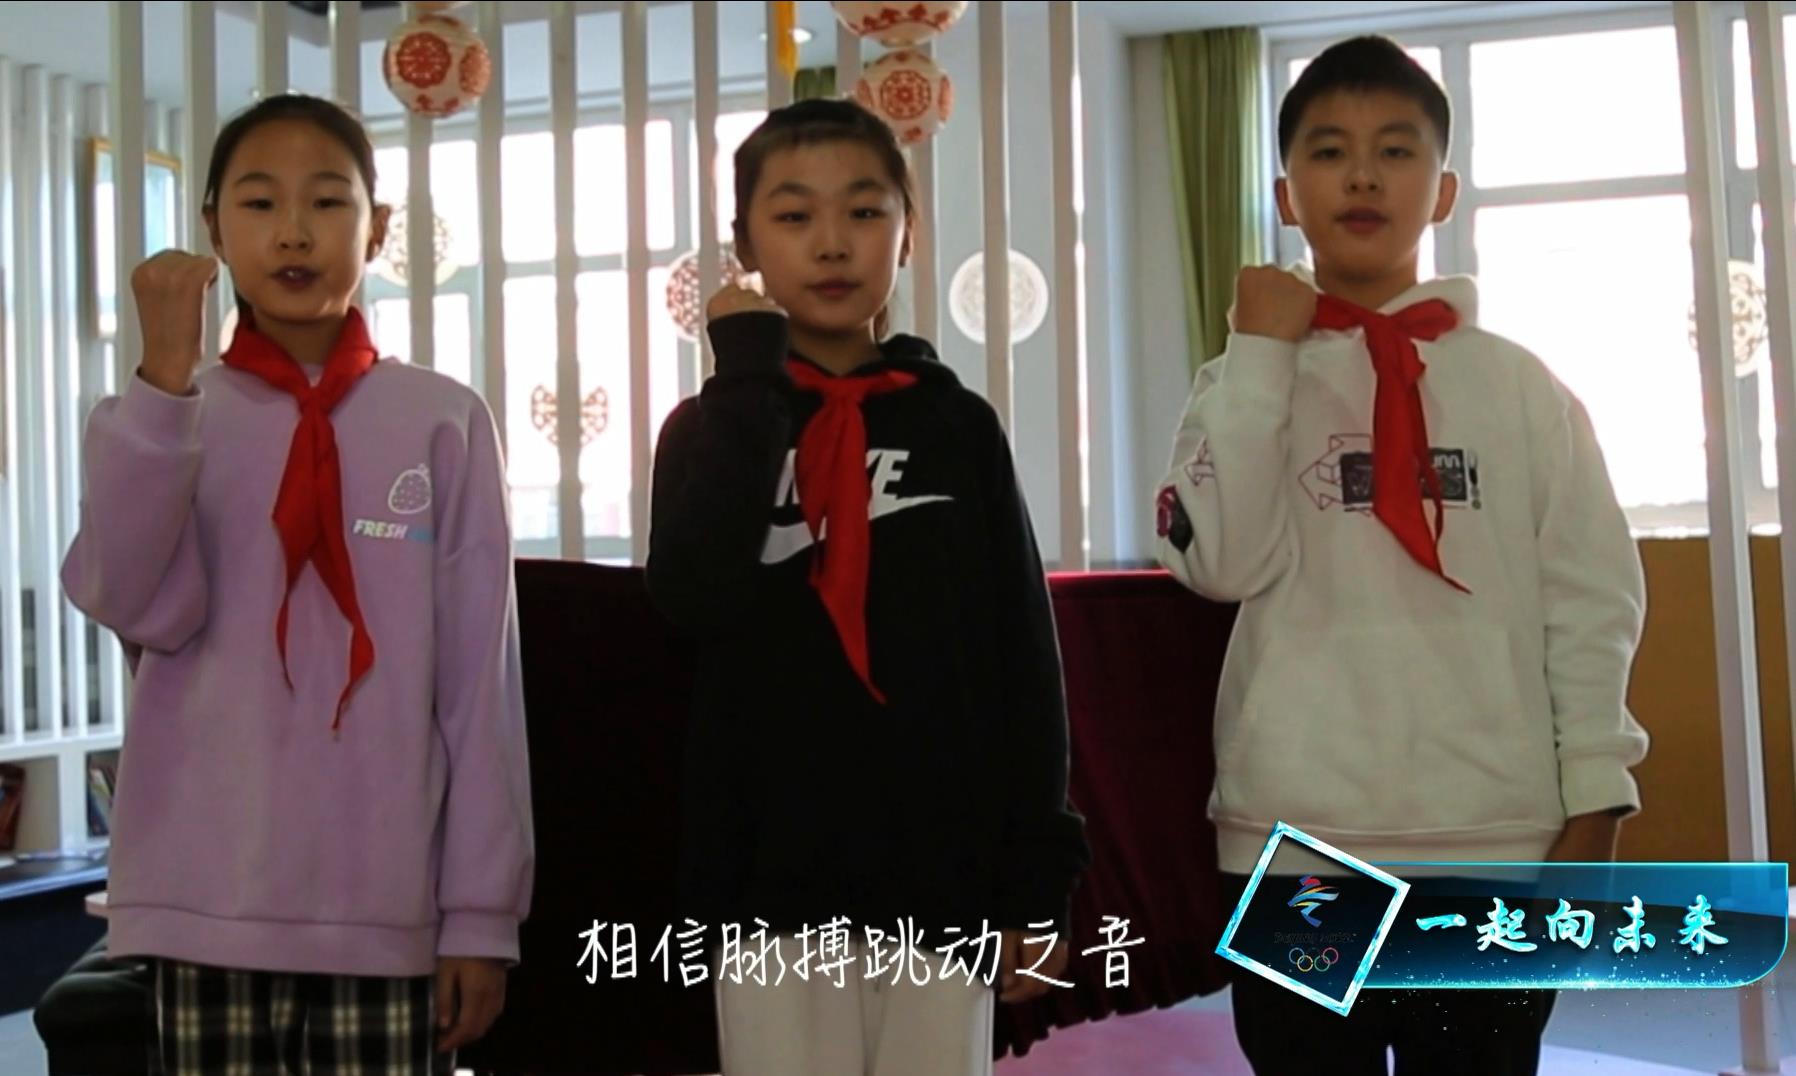 北京第一师范学校附属小学 —— 向世界微笑